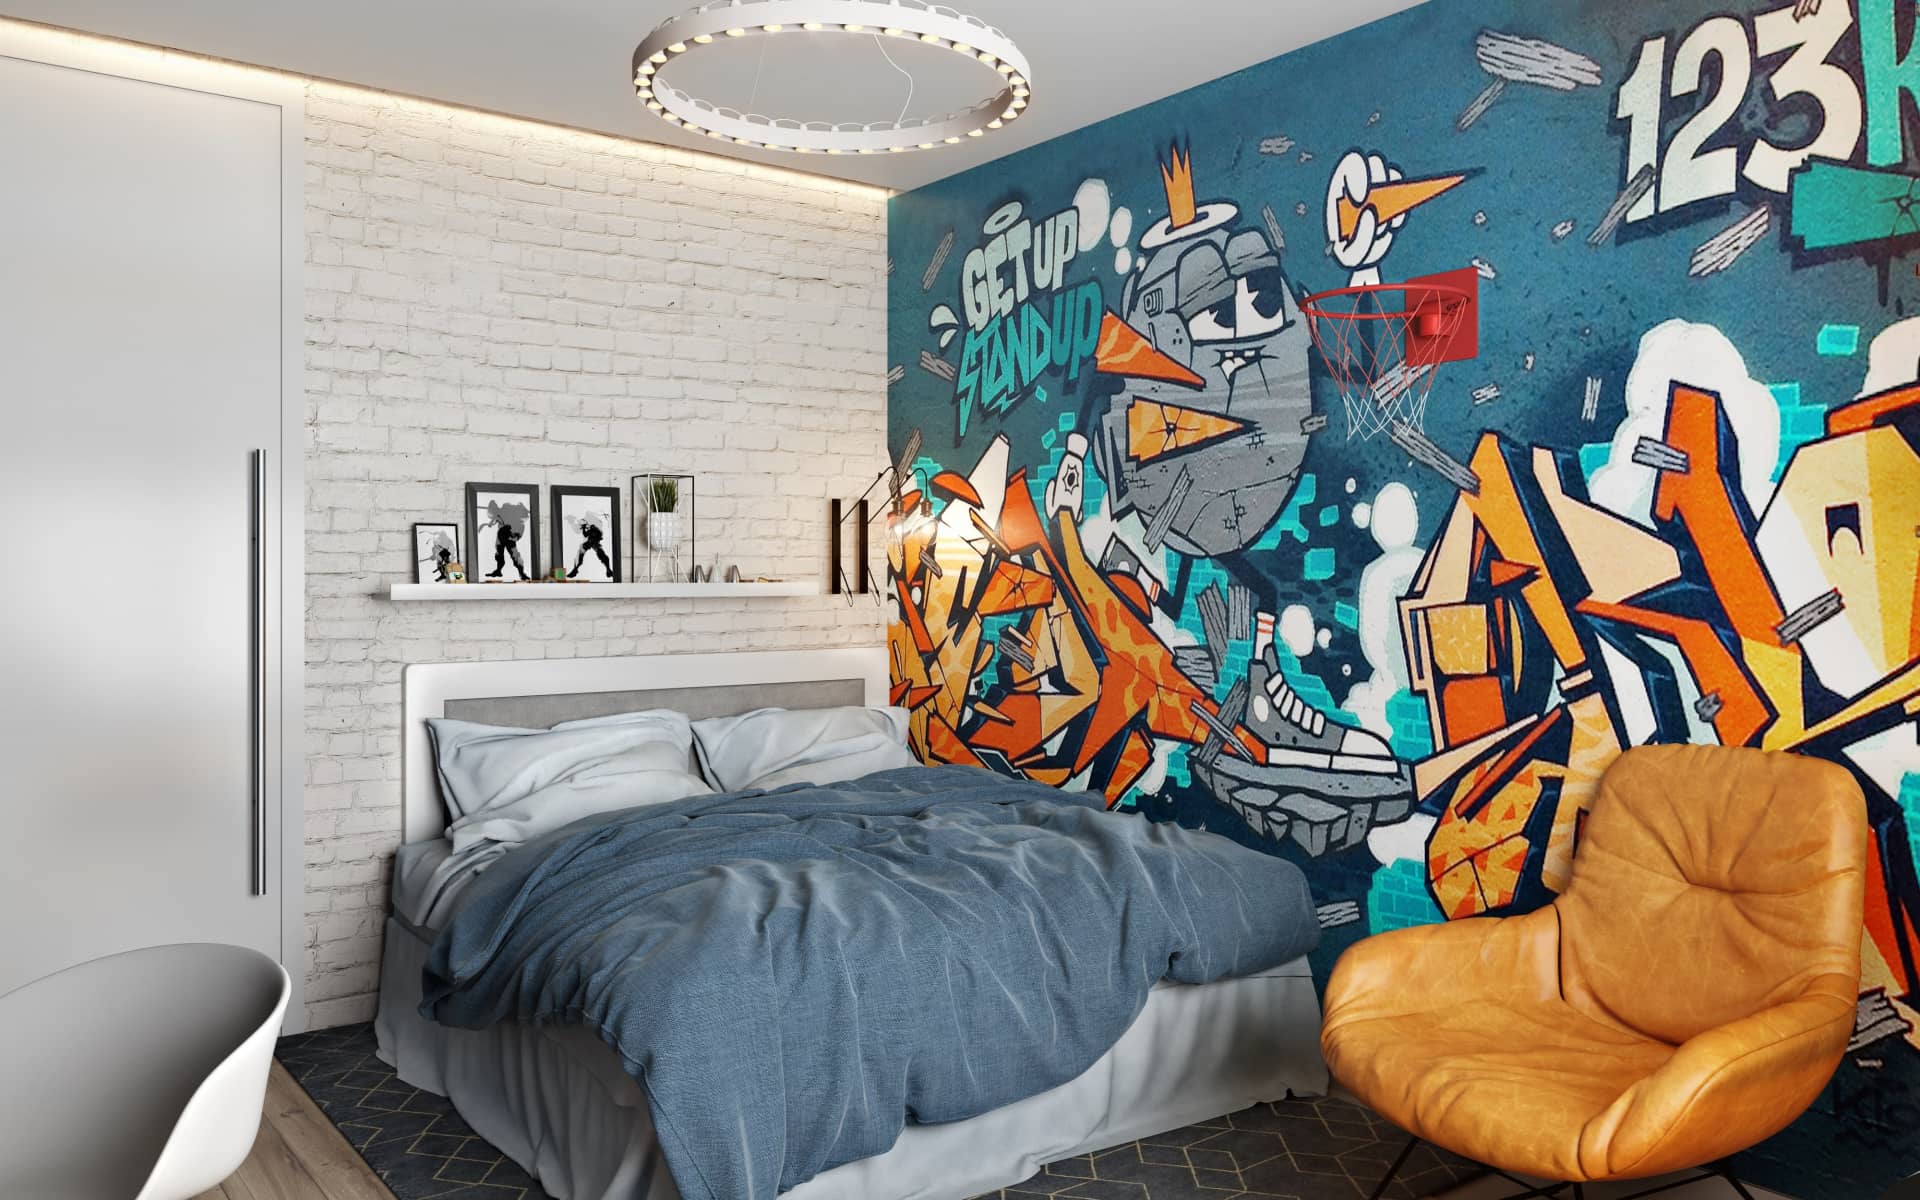 Стена с нарисованным графити выполненным в яркой цветовой гамме